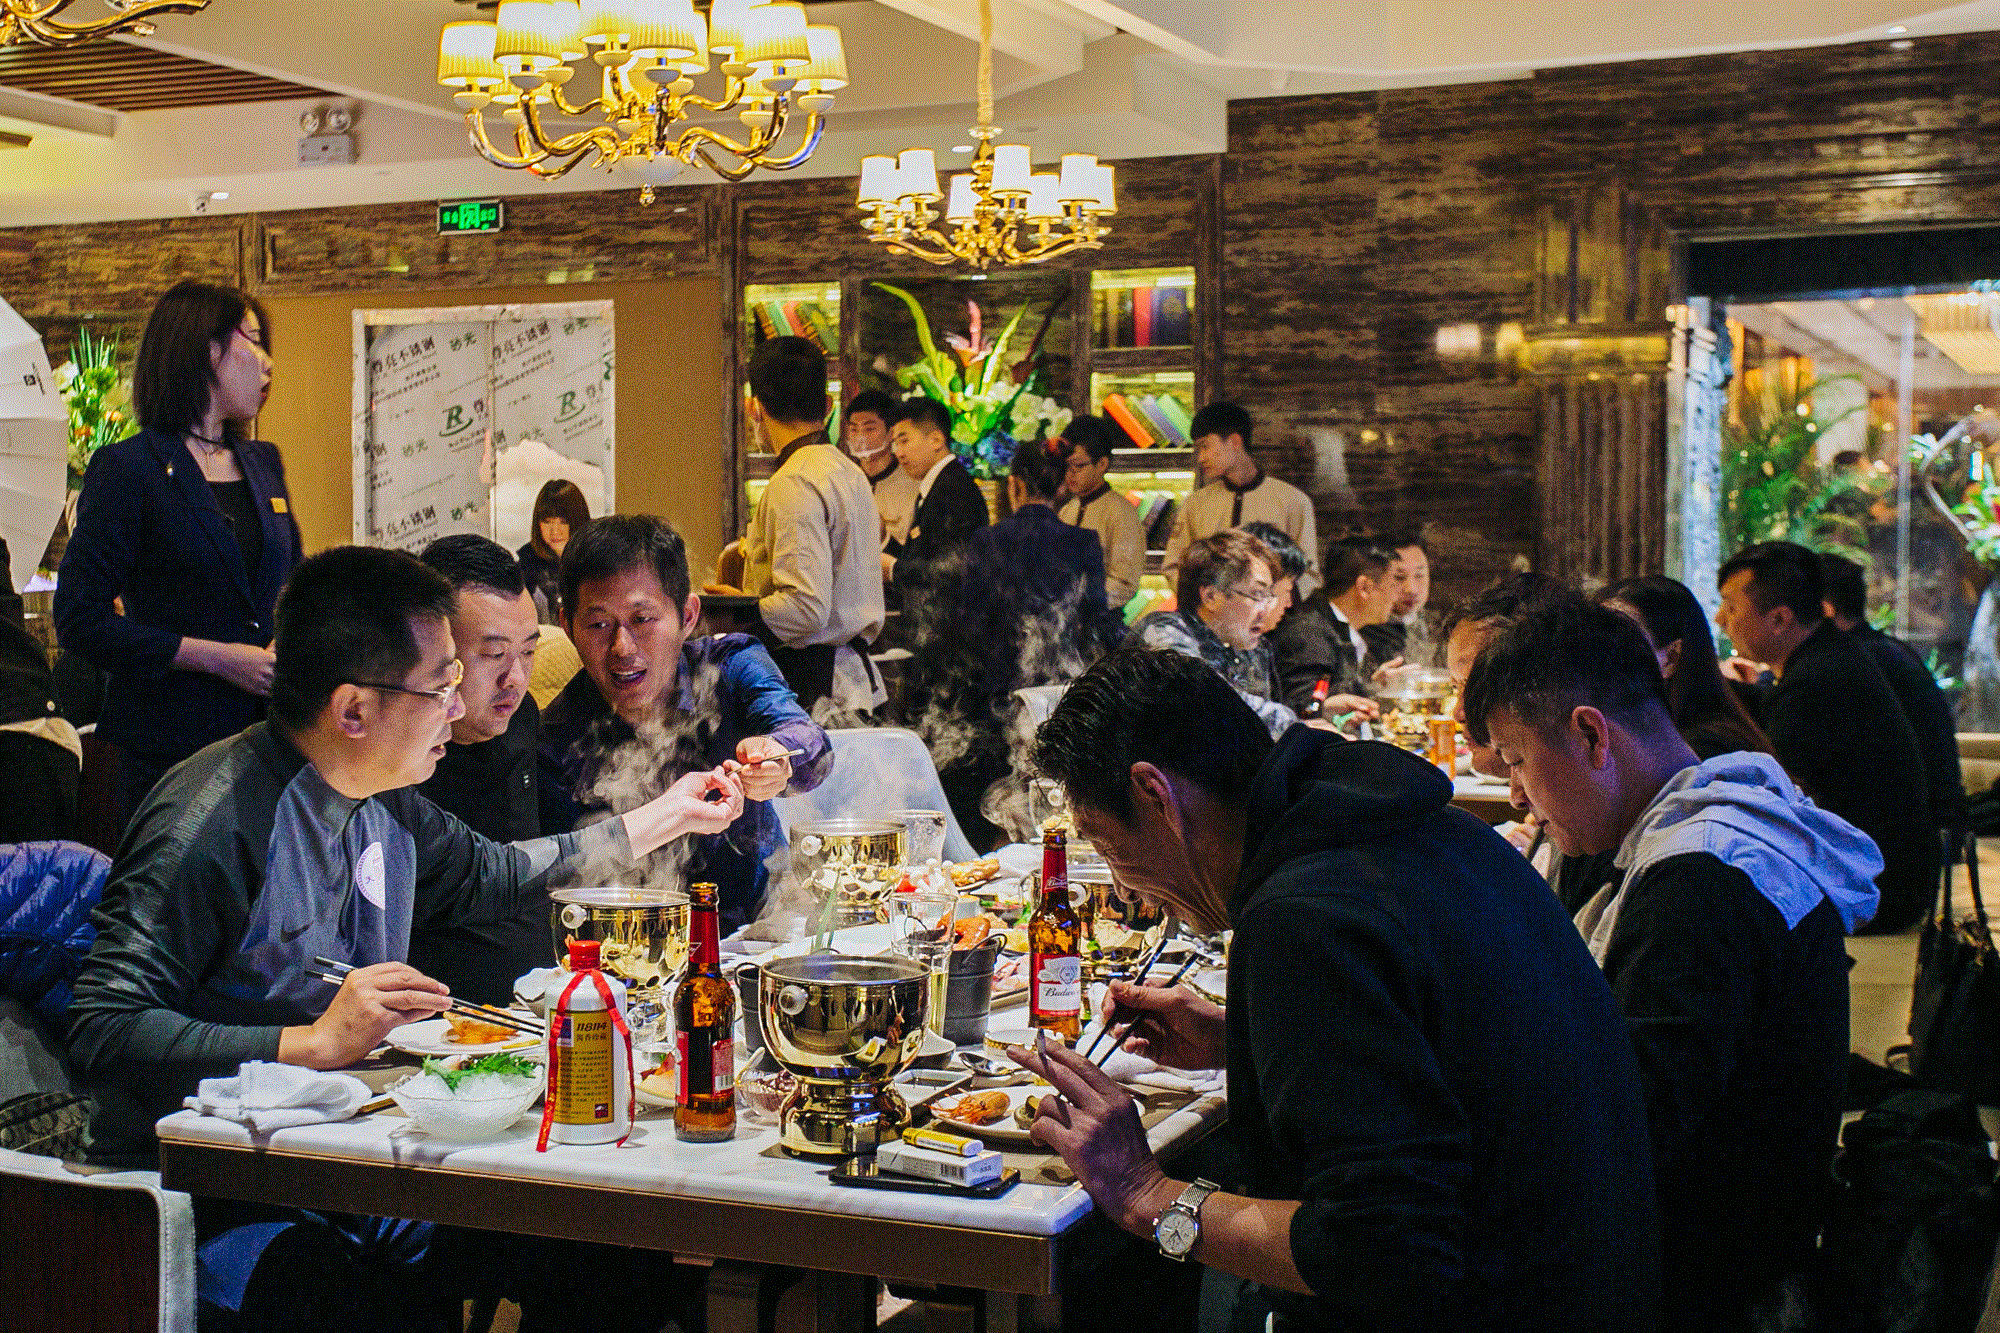 来「观宴」一顿吃遍来自世界四大渔场、149个国家的500种特色美味!